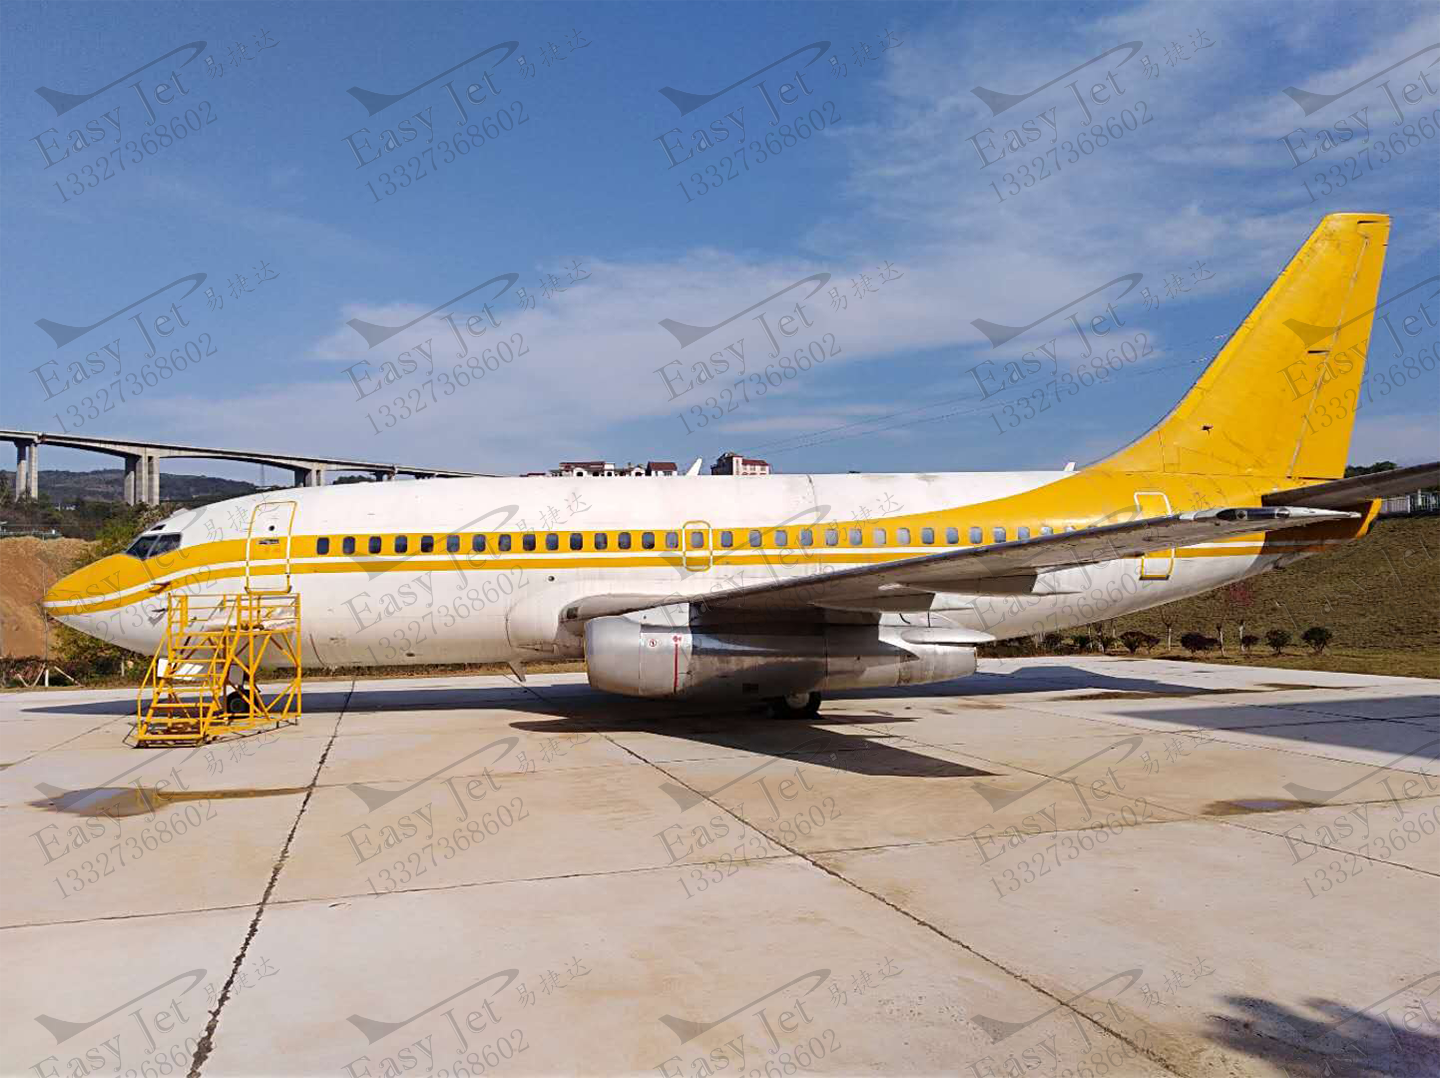 张家界航空工业职业技术学院退役波音737-200飞机采购项目